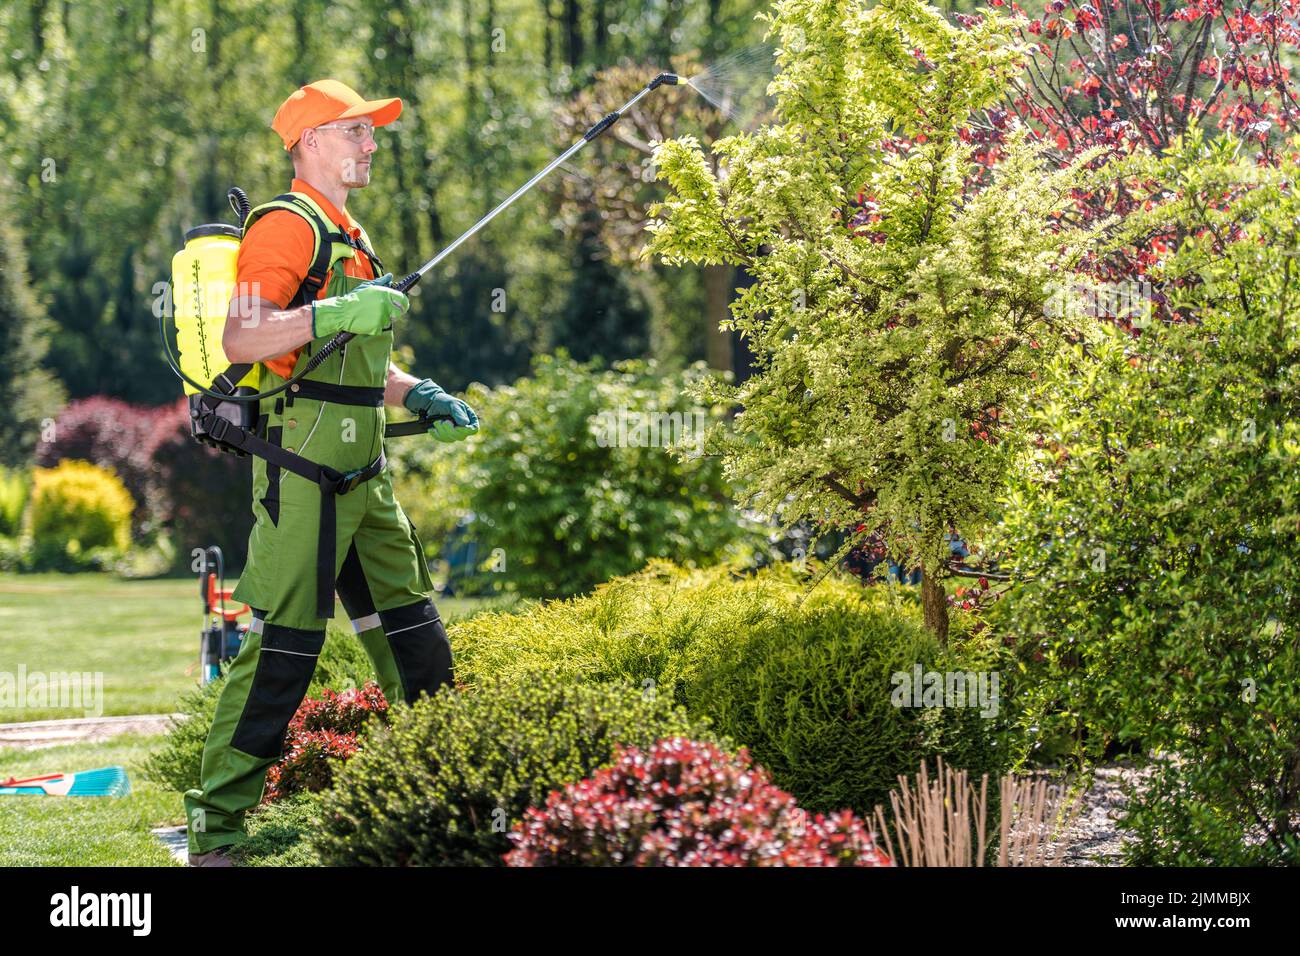 Professioneller Kaukasischer Gärtner, der während regelmäßiger saisonaler Pflege- und Wartungsarbeiten Pestizide auf Pflanzen im schönen Garten des Kunden sprüht. Stockfoto